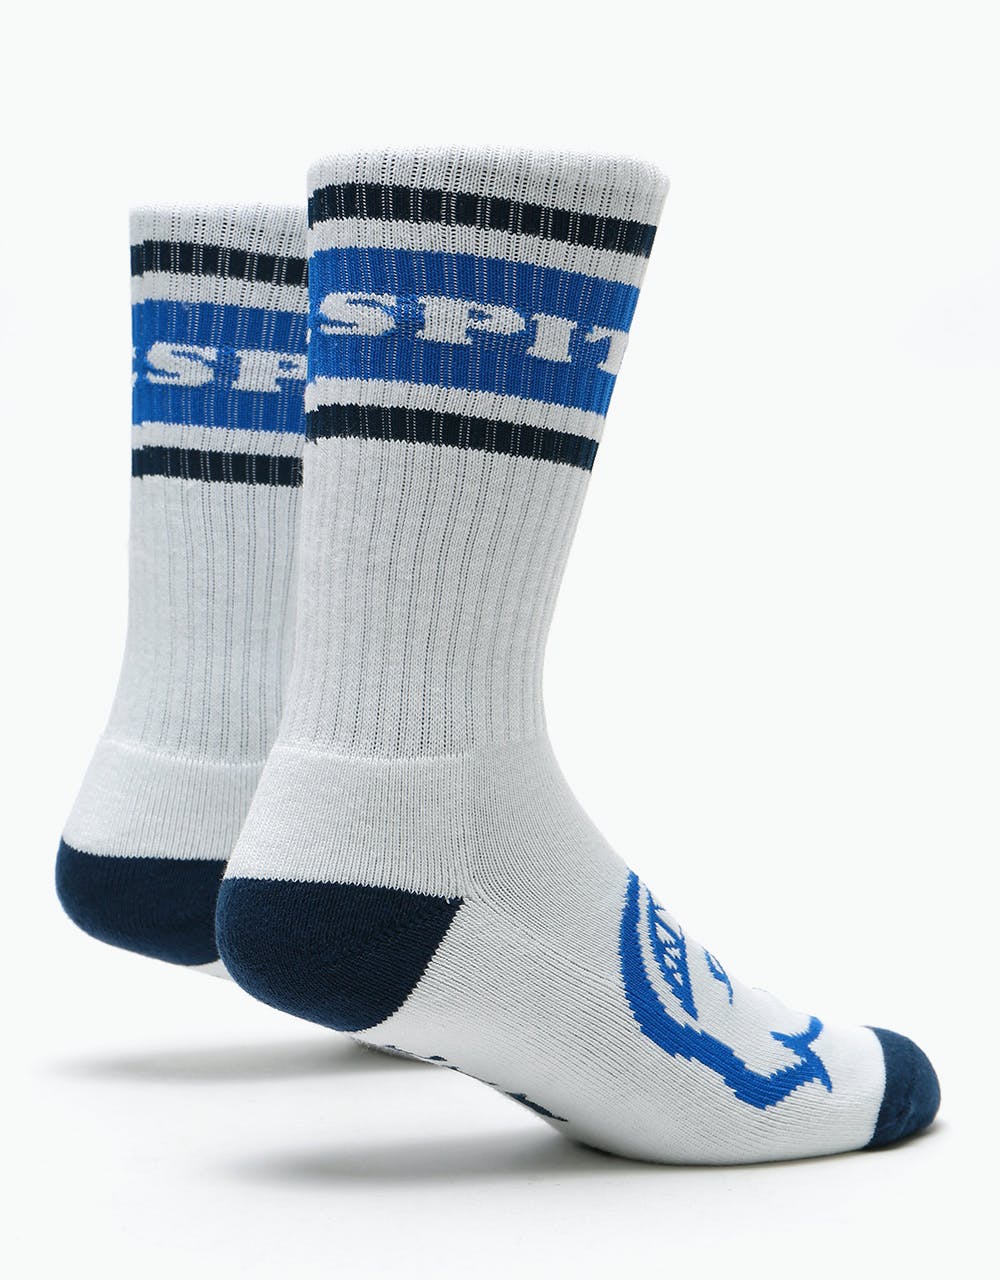 Spitfire OG Classic Socks - White/Navy/Blue